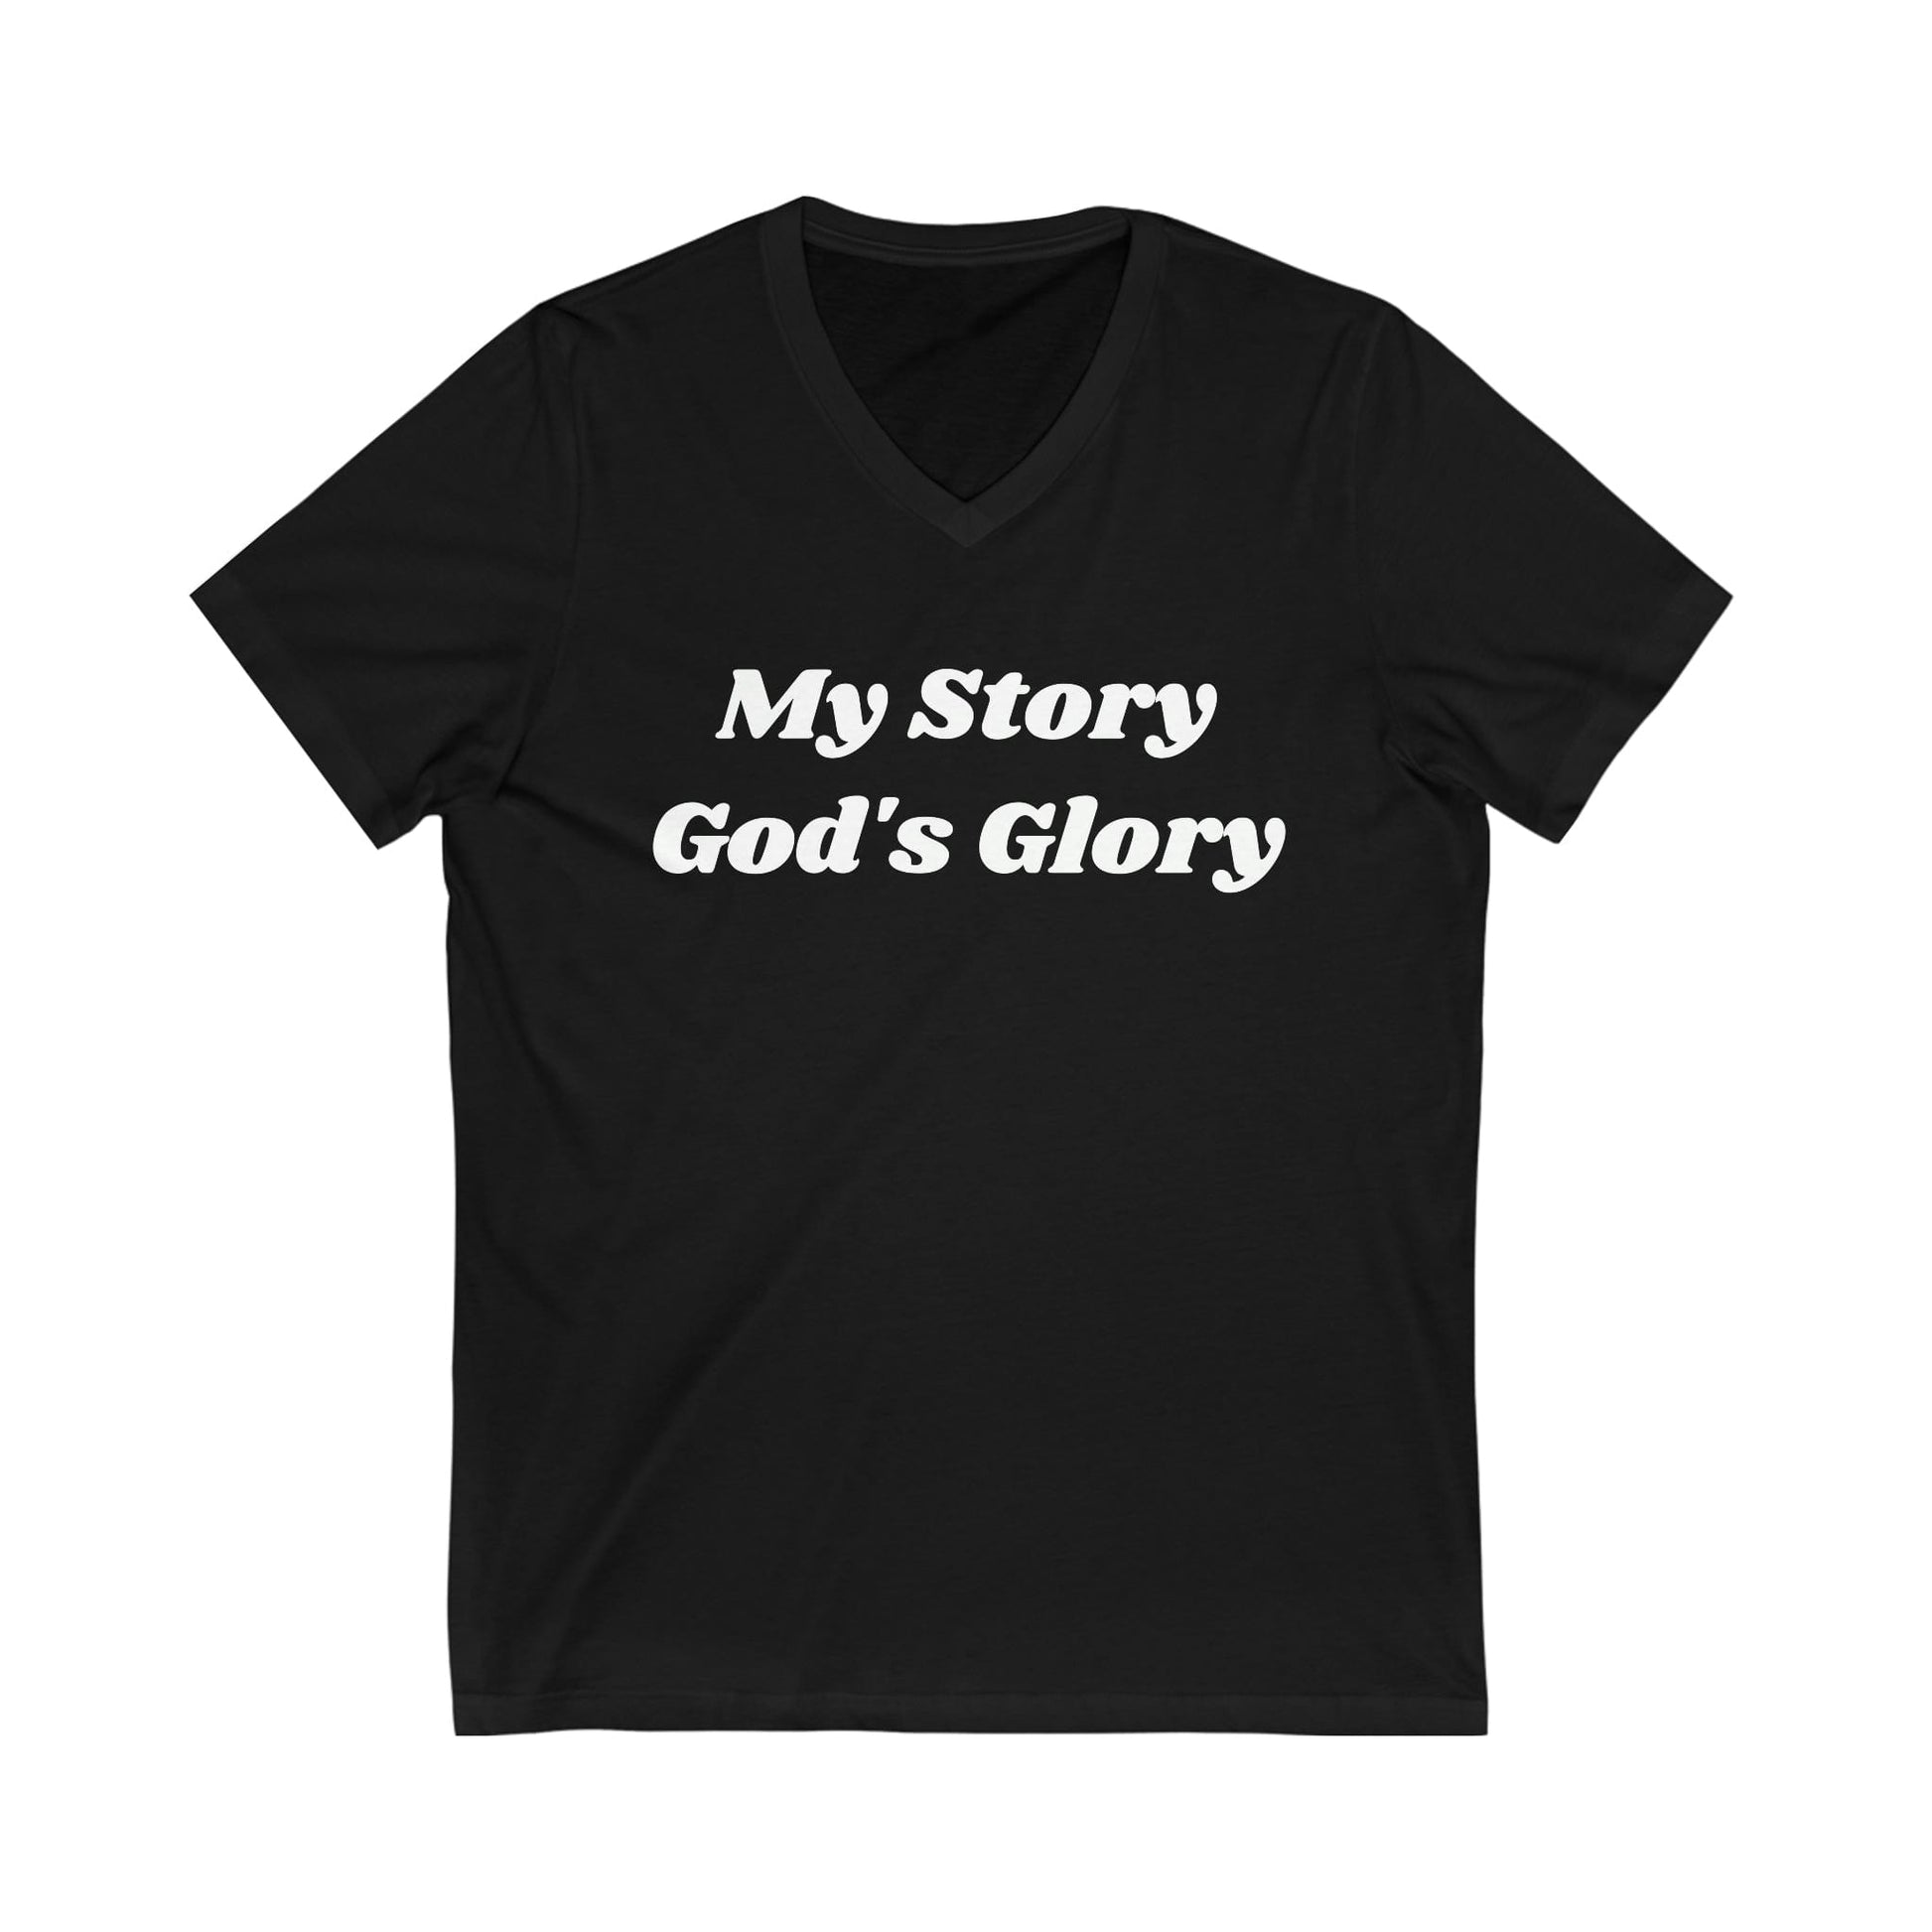 God's Glory Tee, Glorying God T-Shirt, Christian Apparel, Faith Apparel